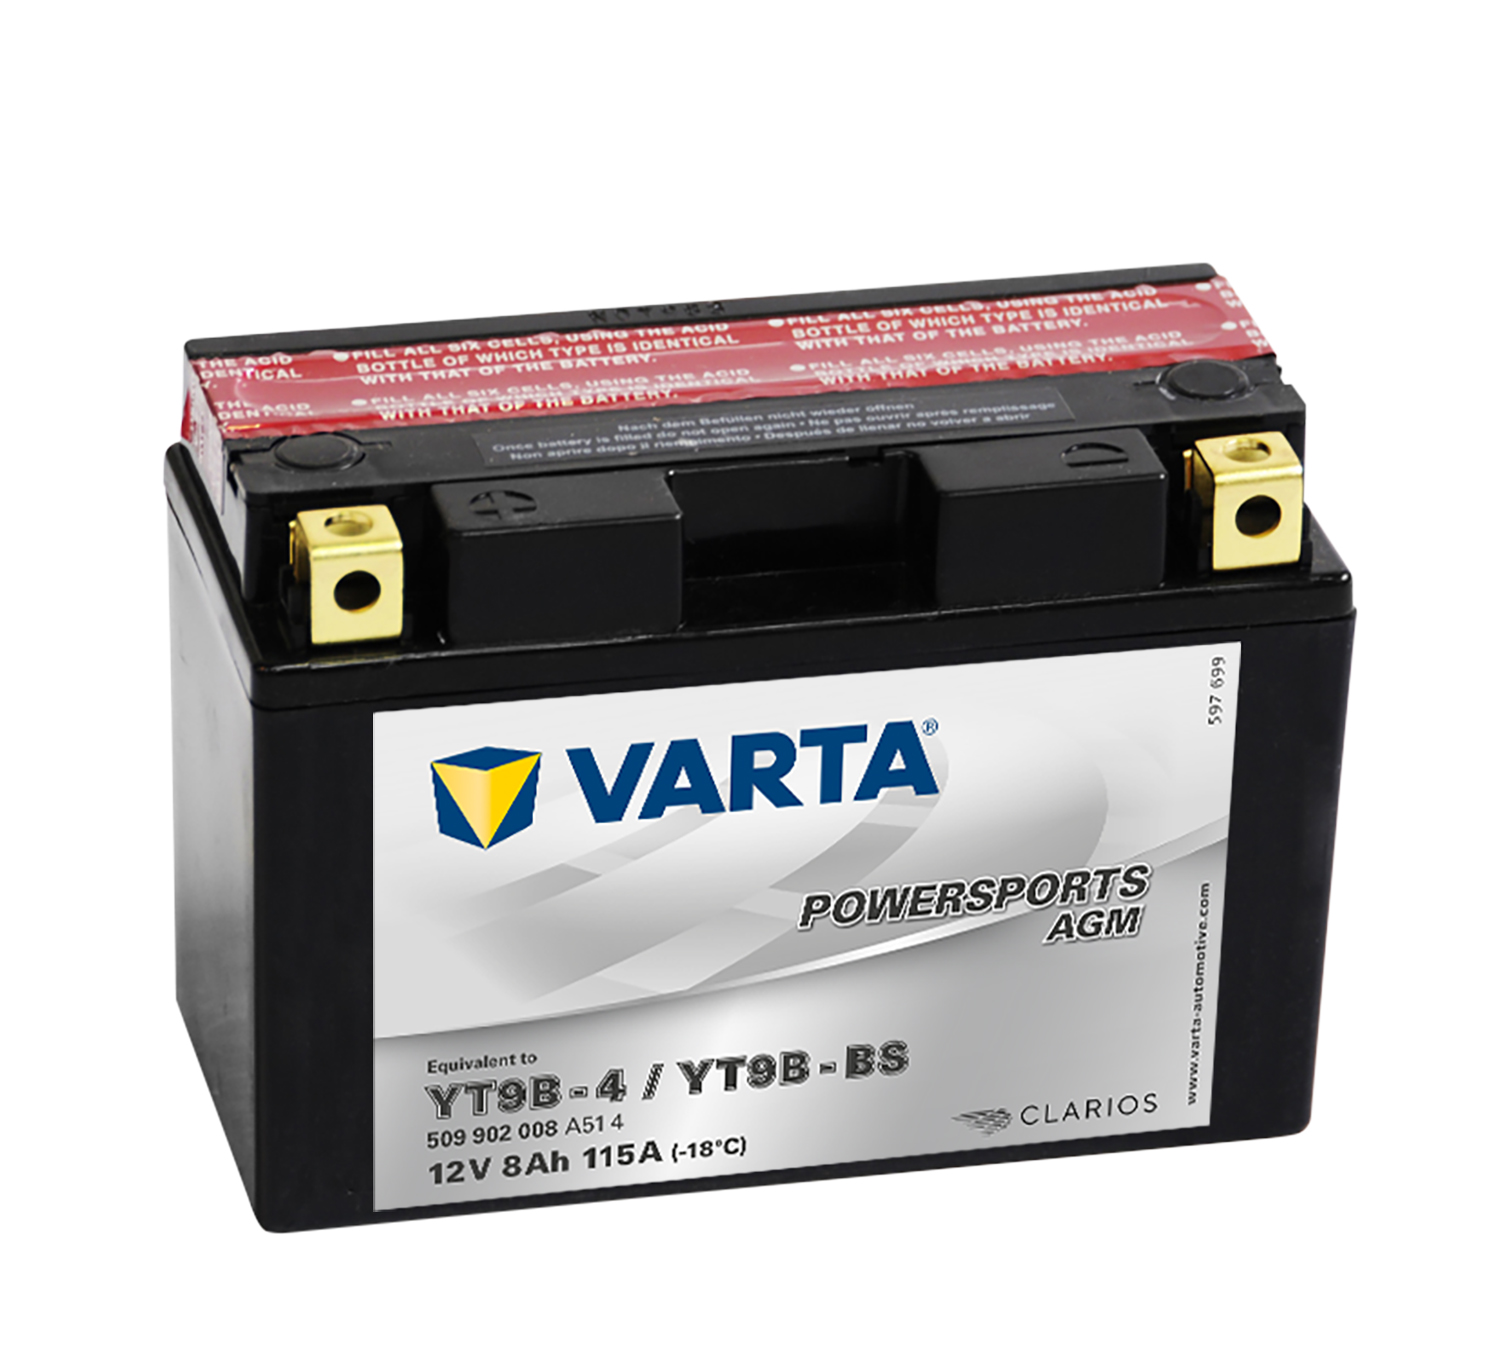 VARTA Motorradbatterie T9B-4 T9B-BS 